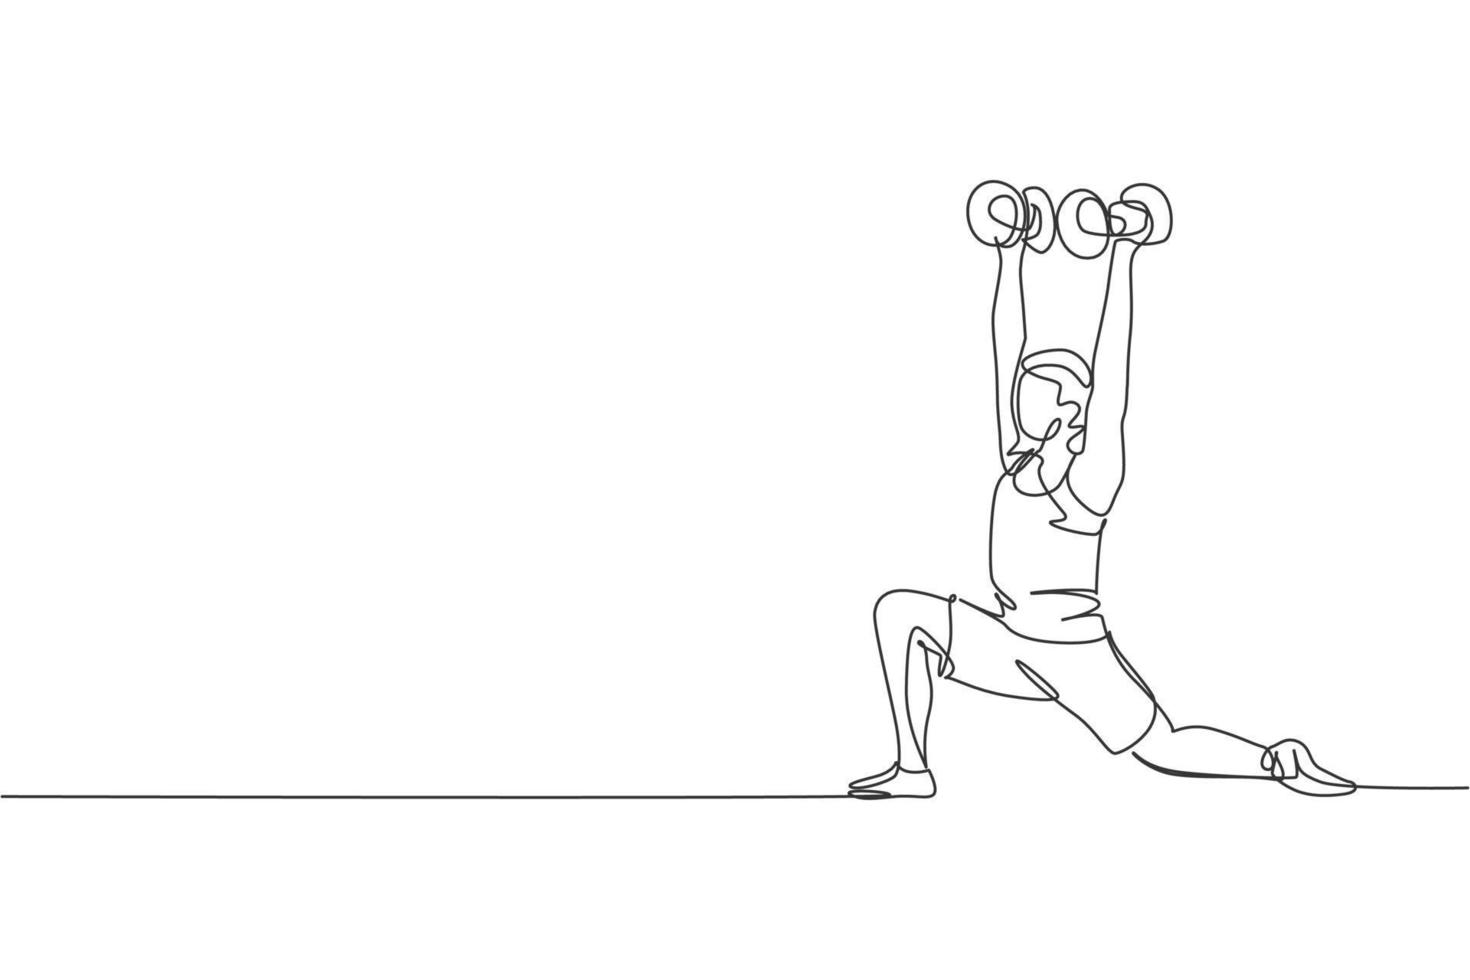 una sola línea dibujando a un joven enérgico trabajando haciendo una estocada baja con pesas en la ilustración vectorial del gimnasio. fitness deporte culturismo y concepto de estilo de vida saludable. dibujo de línea continua moderna vector